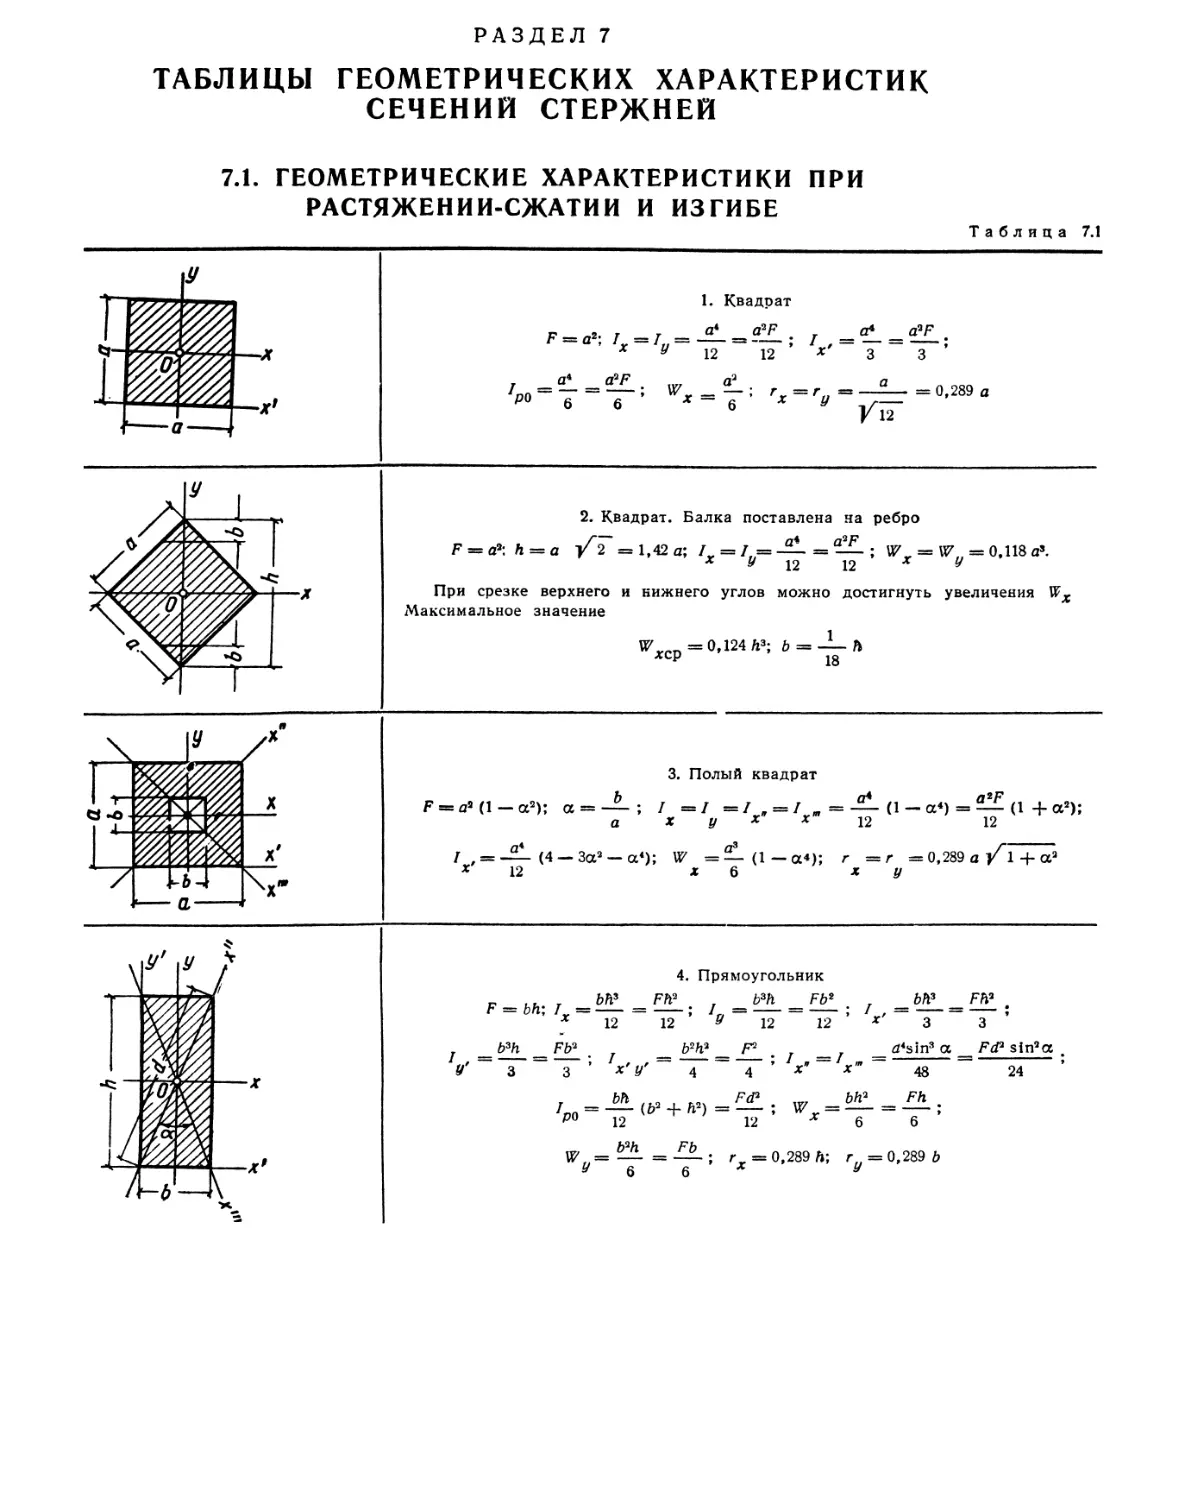 7. Таблицы геометрических характеристик сечений стержней